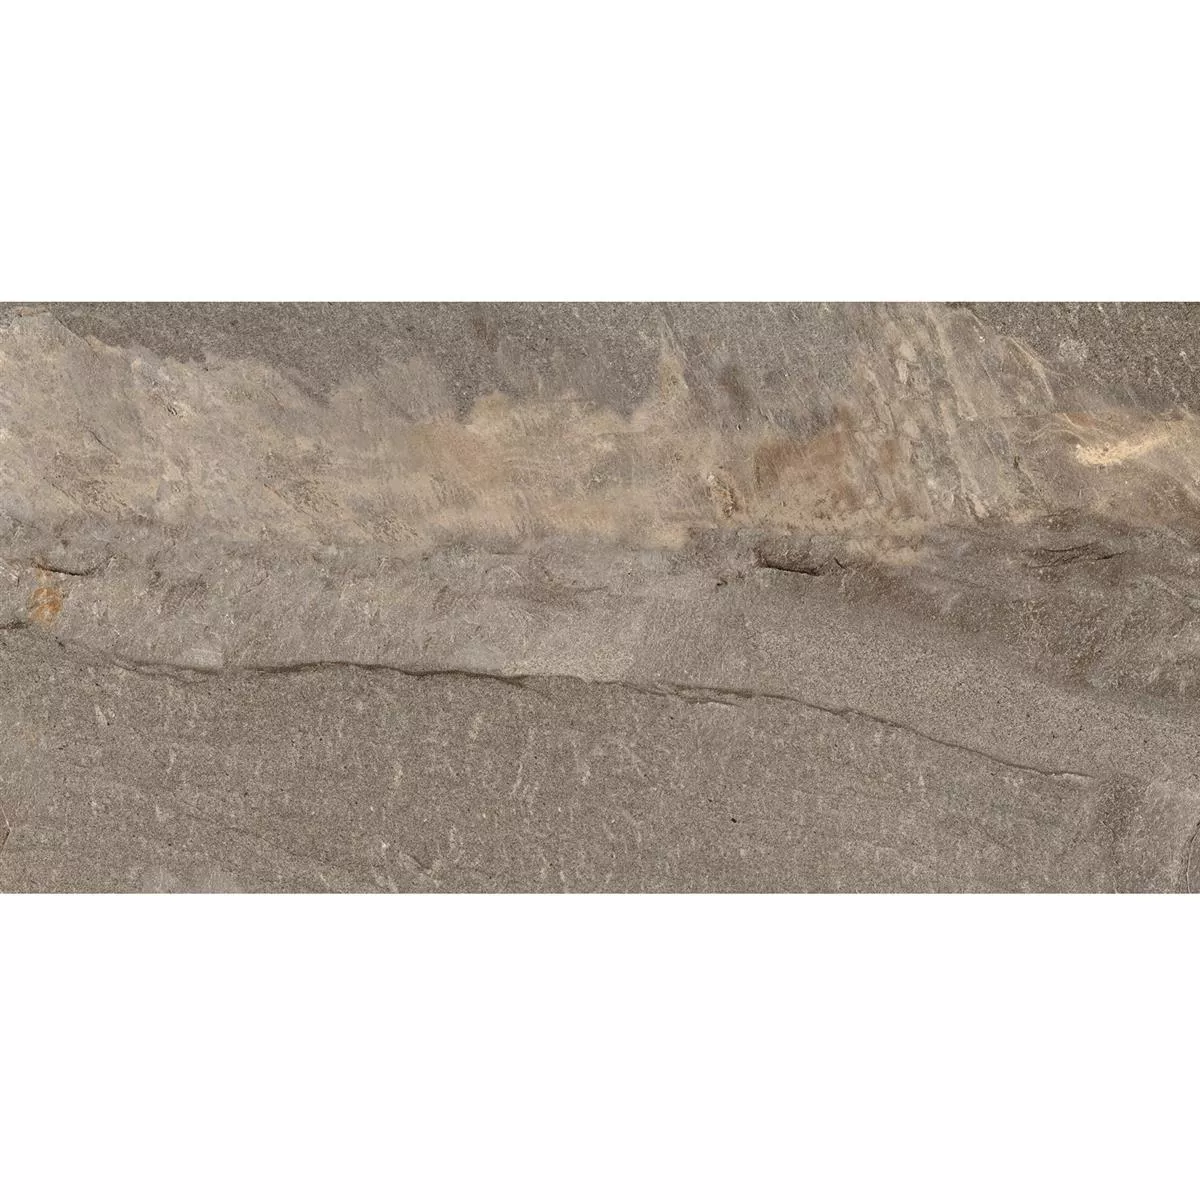 Πλακάκια Δαπέδου Homeland Eμφάνιση Φυσικής Πέτρας R10 Μπρούντζος 30x60cm